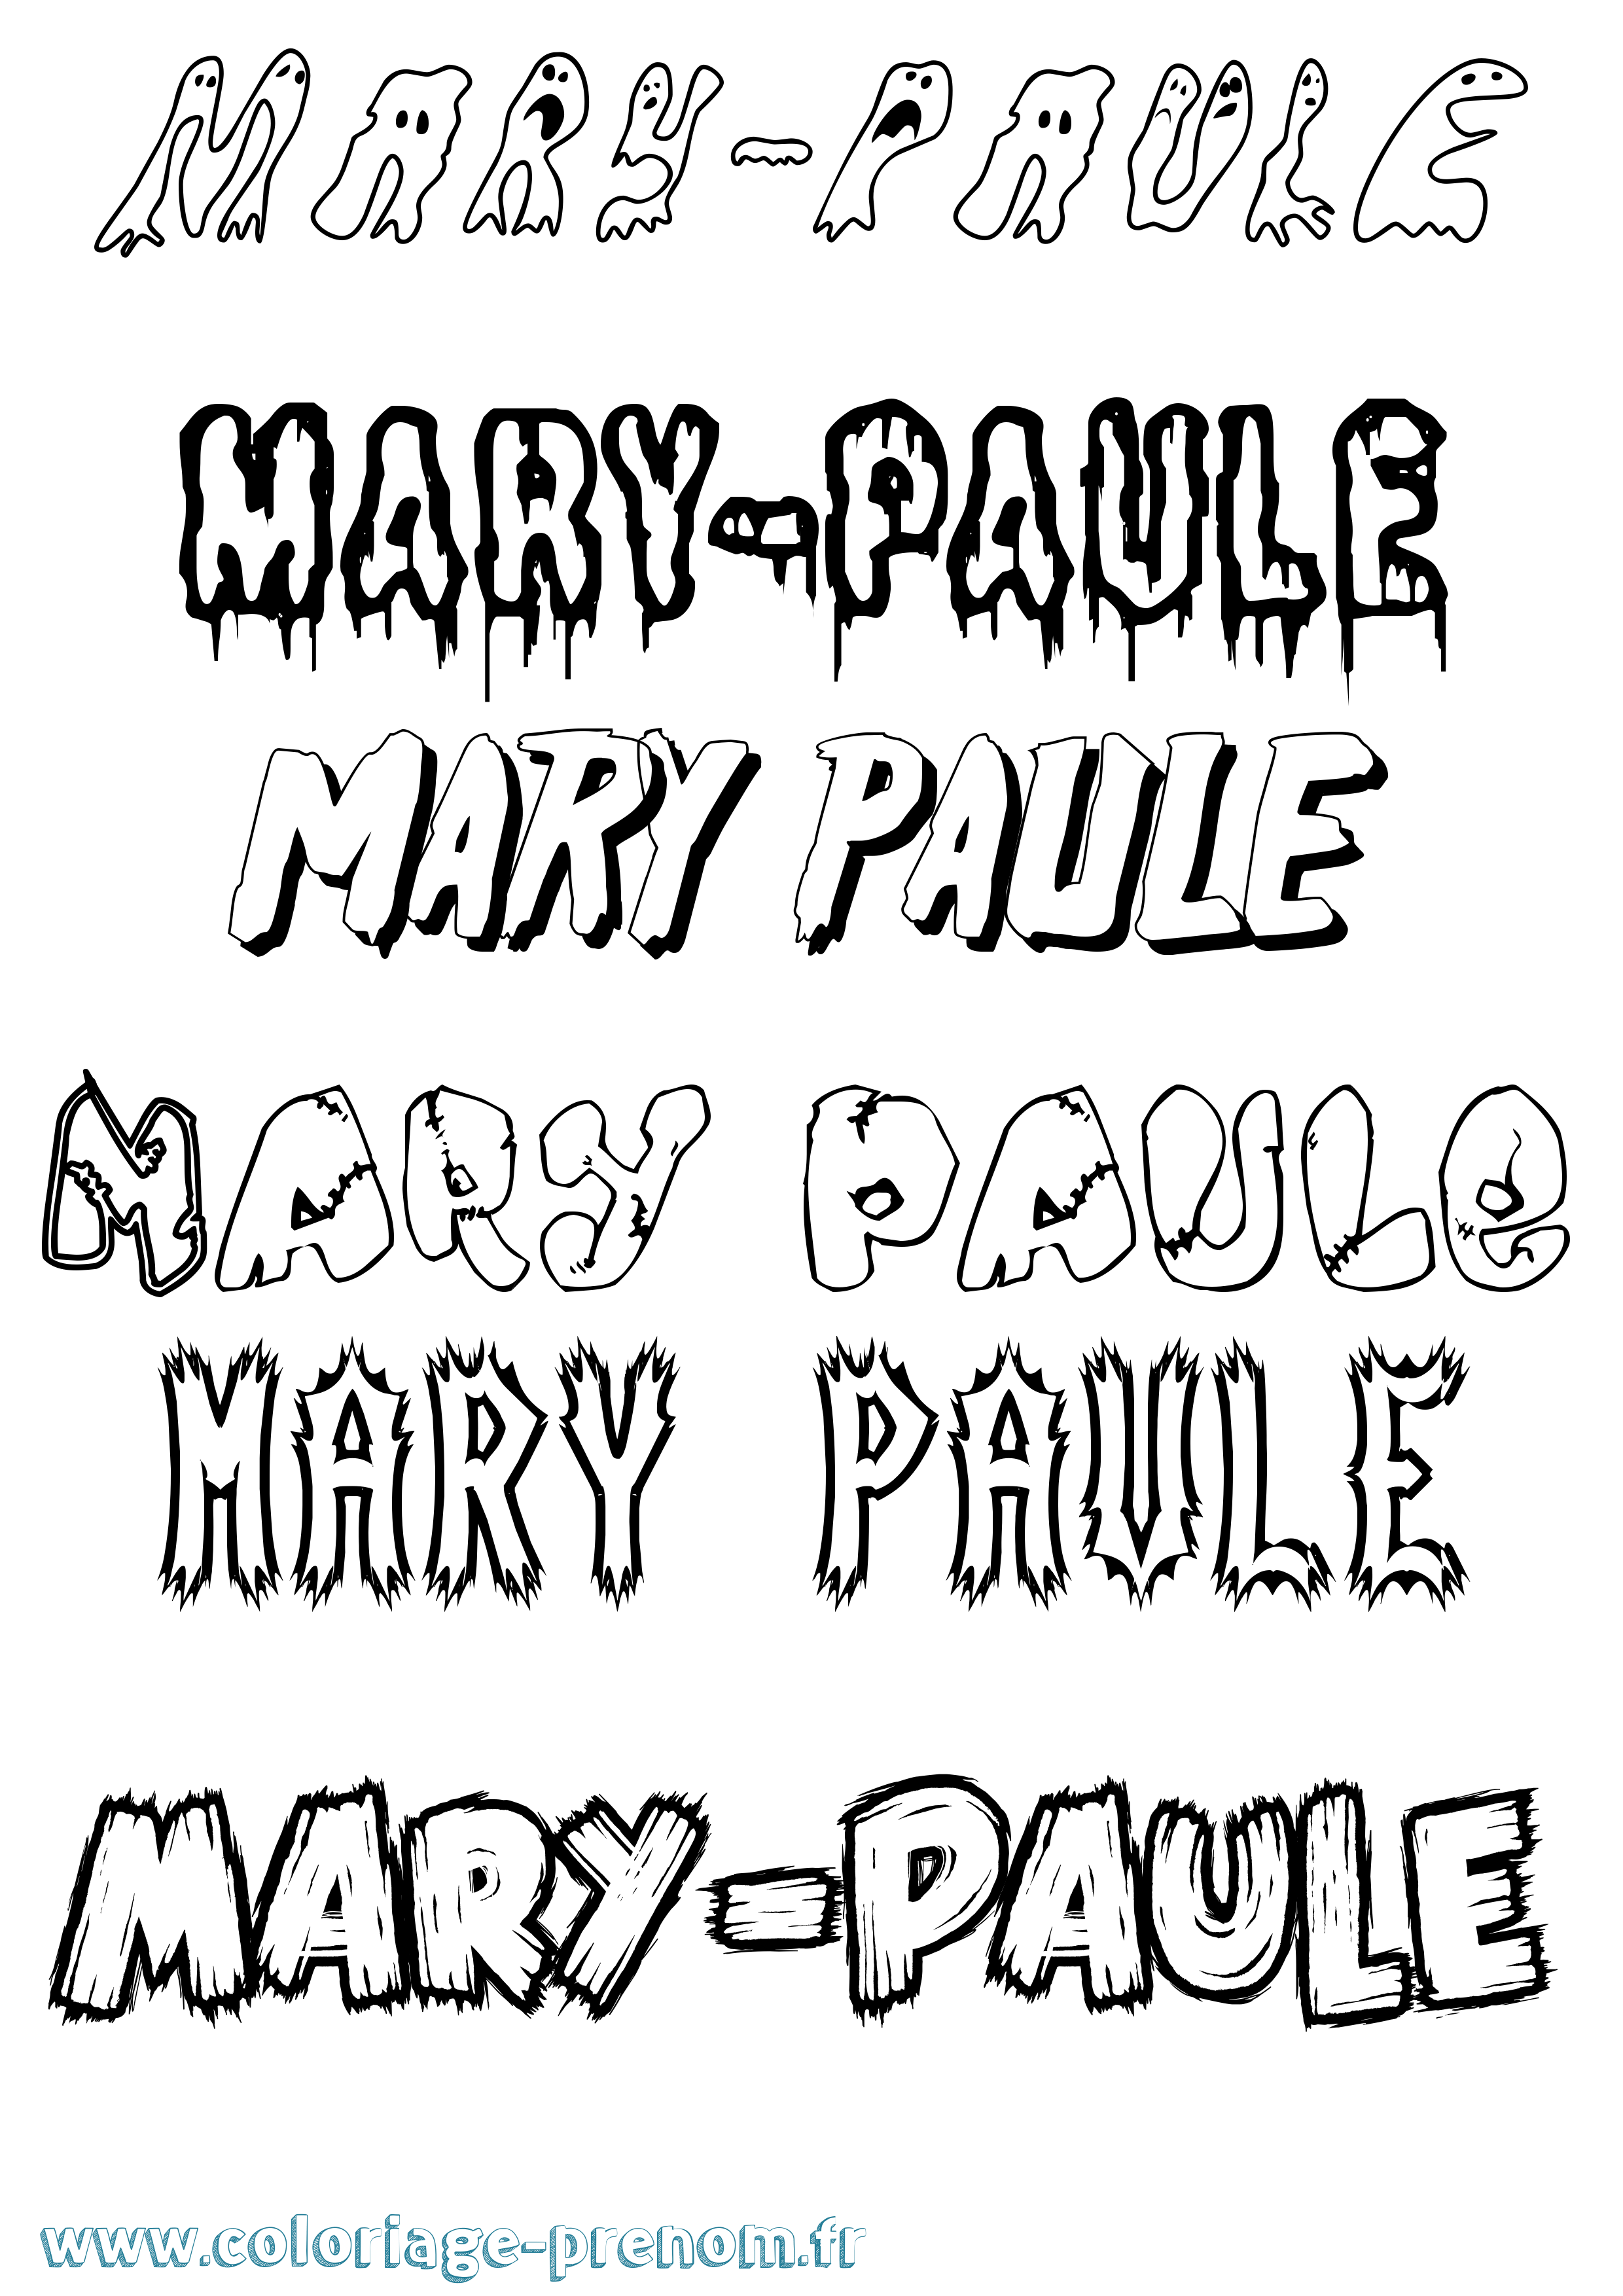 Coloriage prénom Mary-Paule Frisson